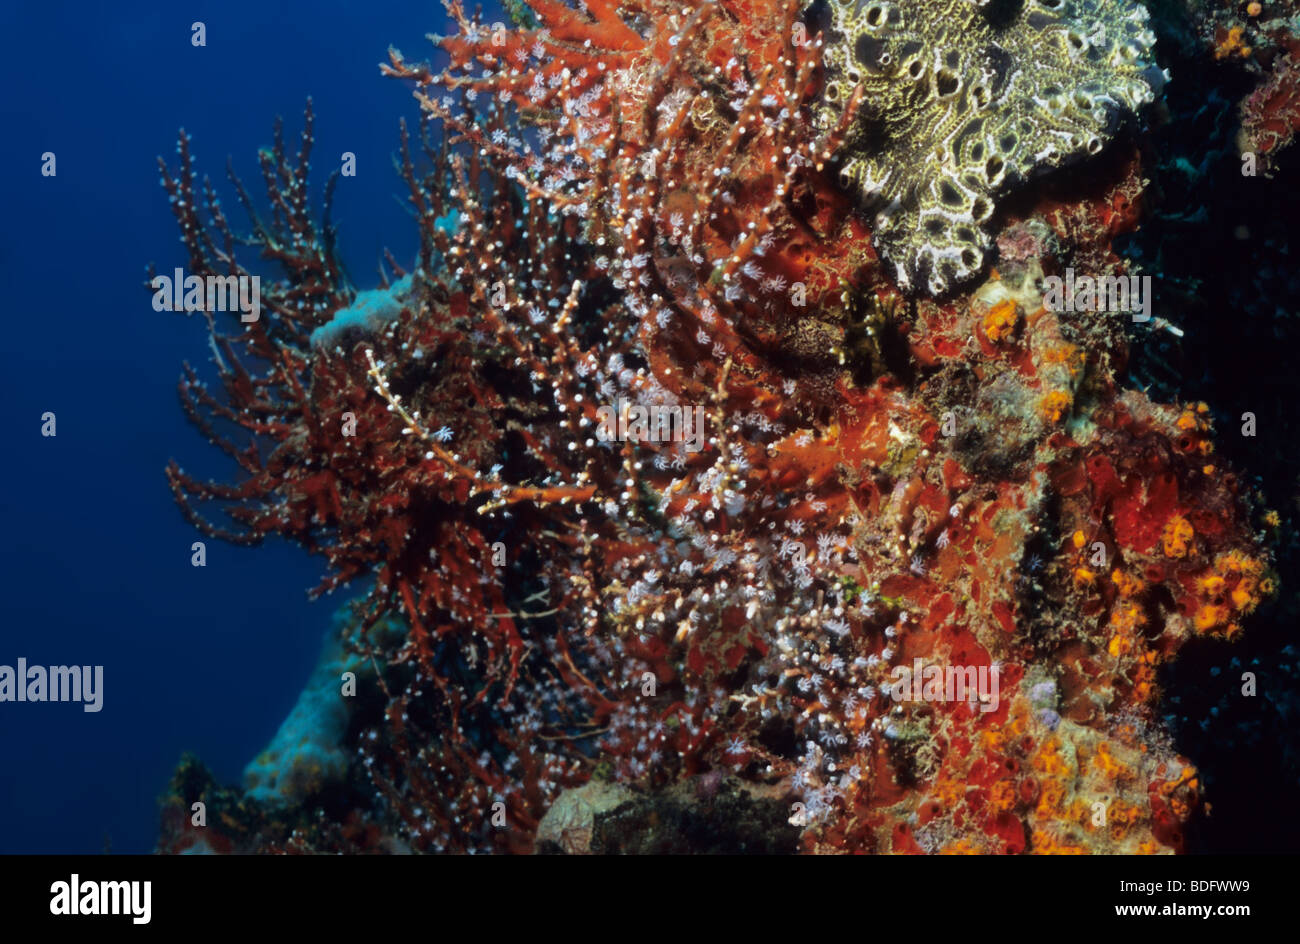 Los organismos marinos increíbles bajo el agua, filmado mientras que bucee en la isla de Grenada, West Indies Foto de stock